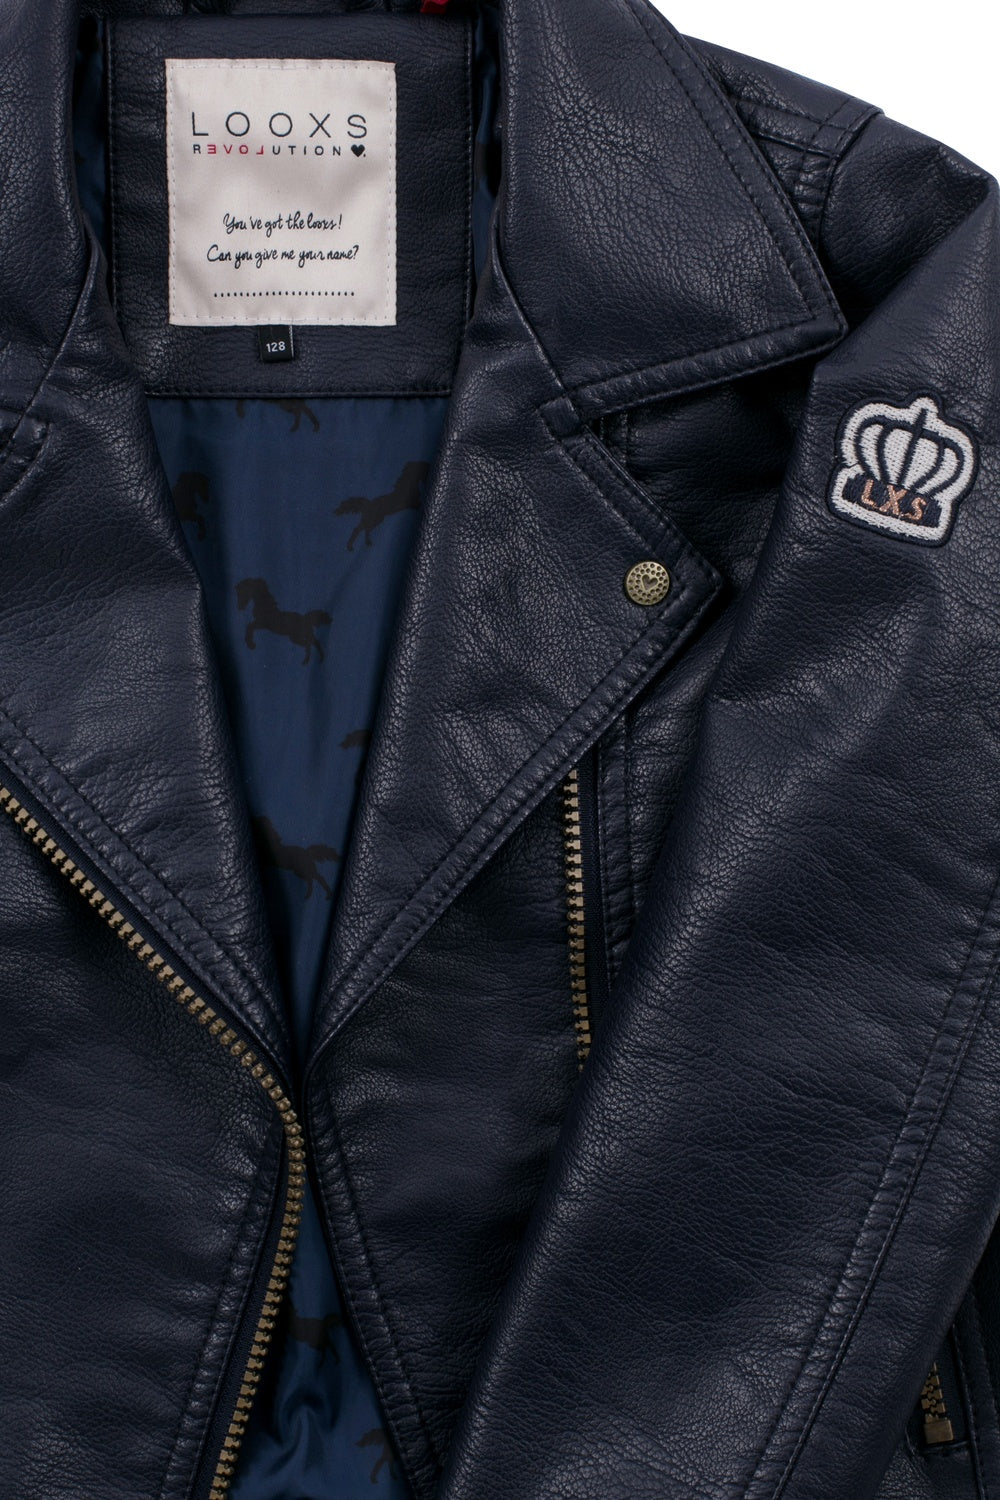 Loox's Revol. Biker jacket imitation leather blue